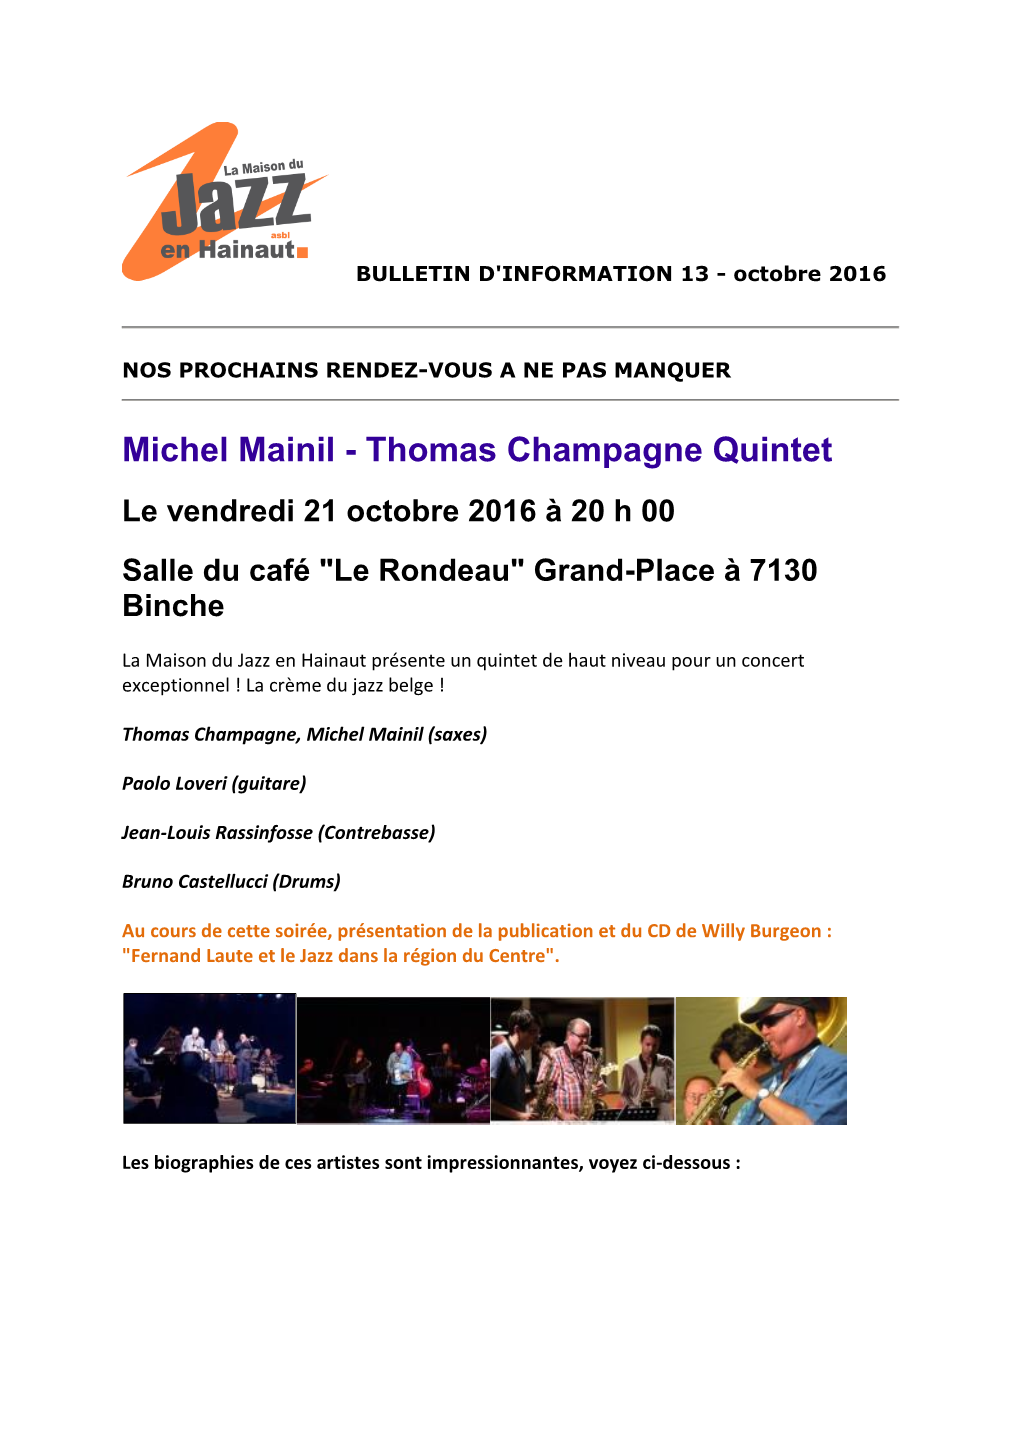 Michel Mainil - Thomas Champagne Quintet Le Vendredi 21 Octobre 2016 À 20 H 00 Salle Du Café "Le Rondeau" Grand-Place À 7130 Binche